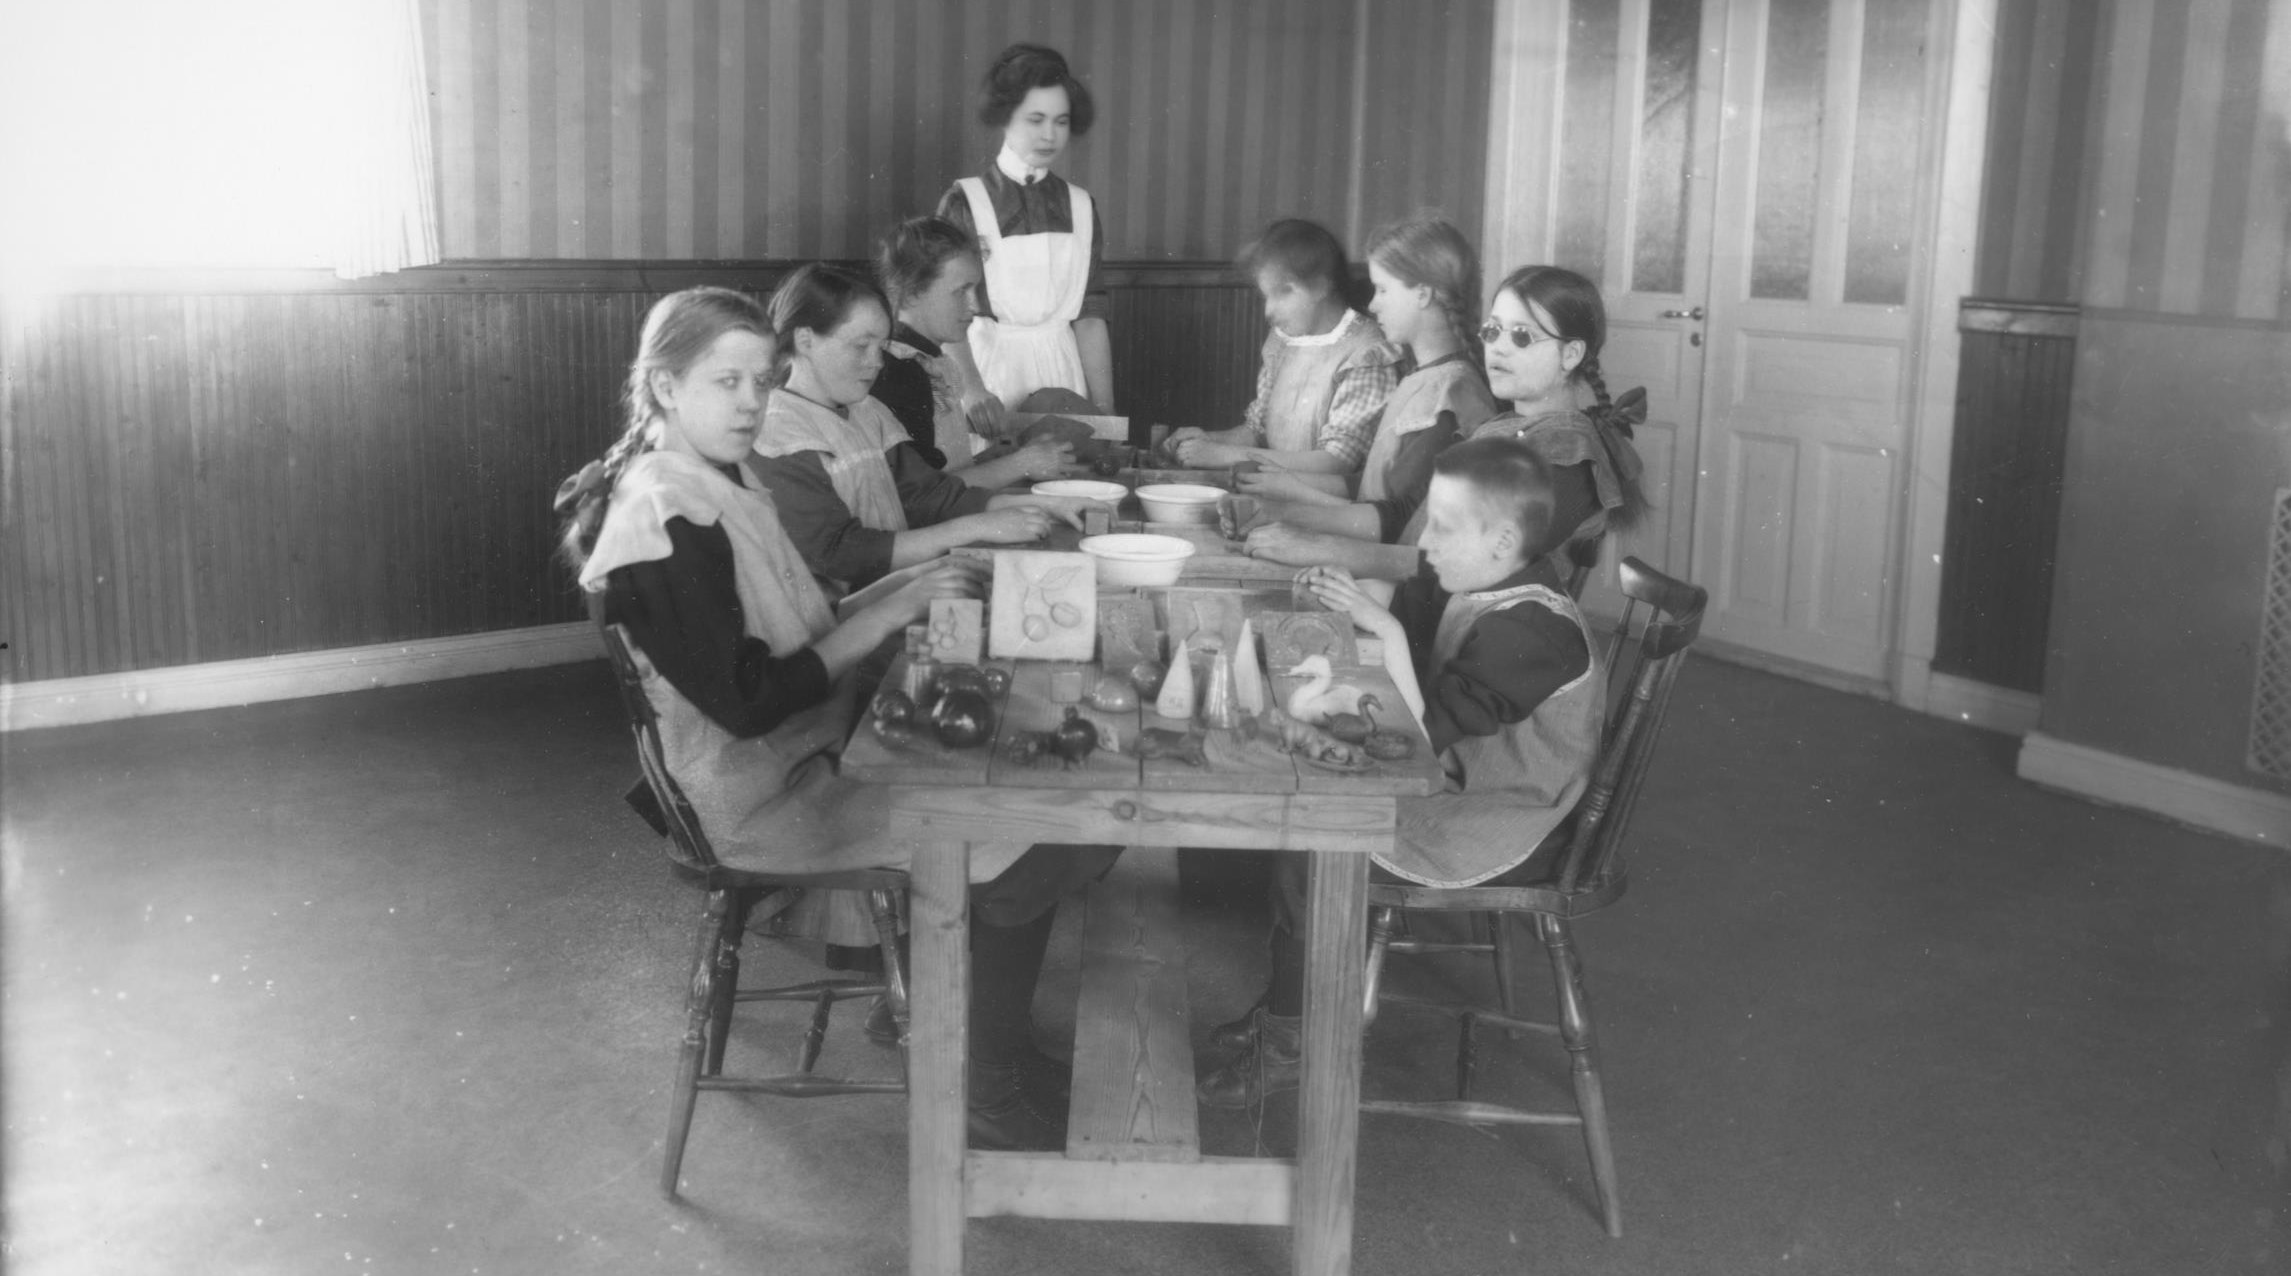  barn på Blindskolan/Drottning Sofias stiftelse i Vänersborg runt 1910